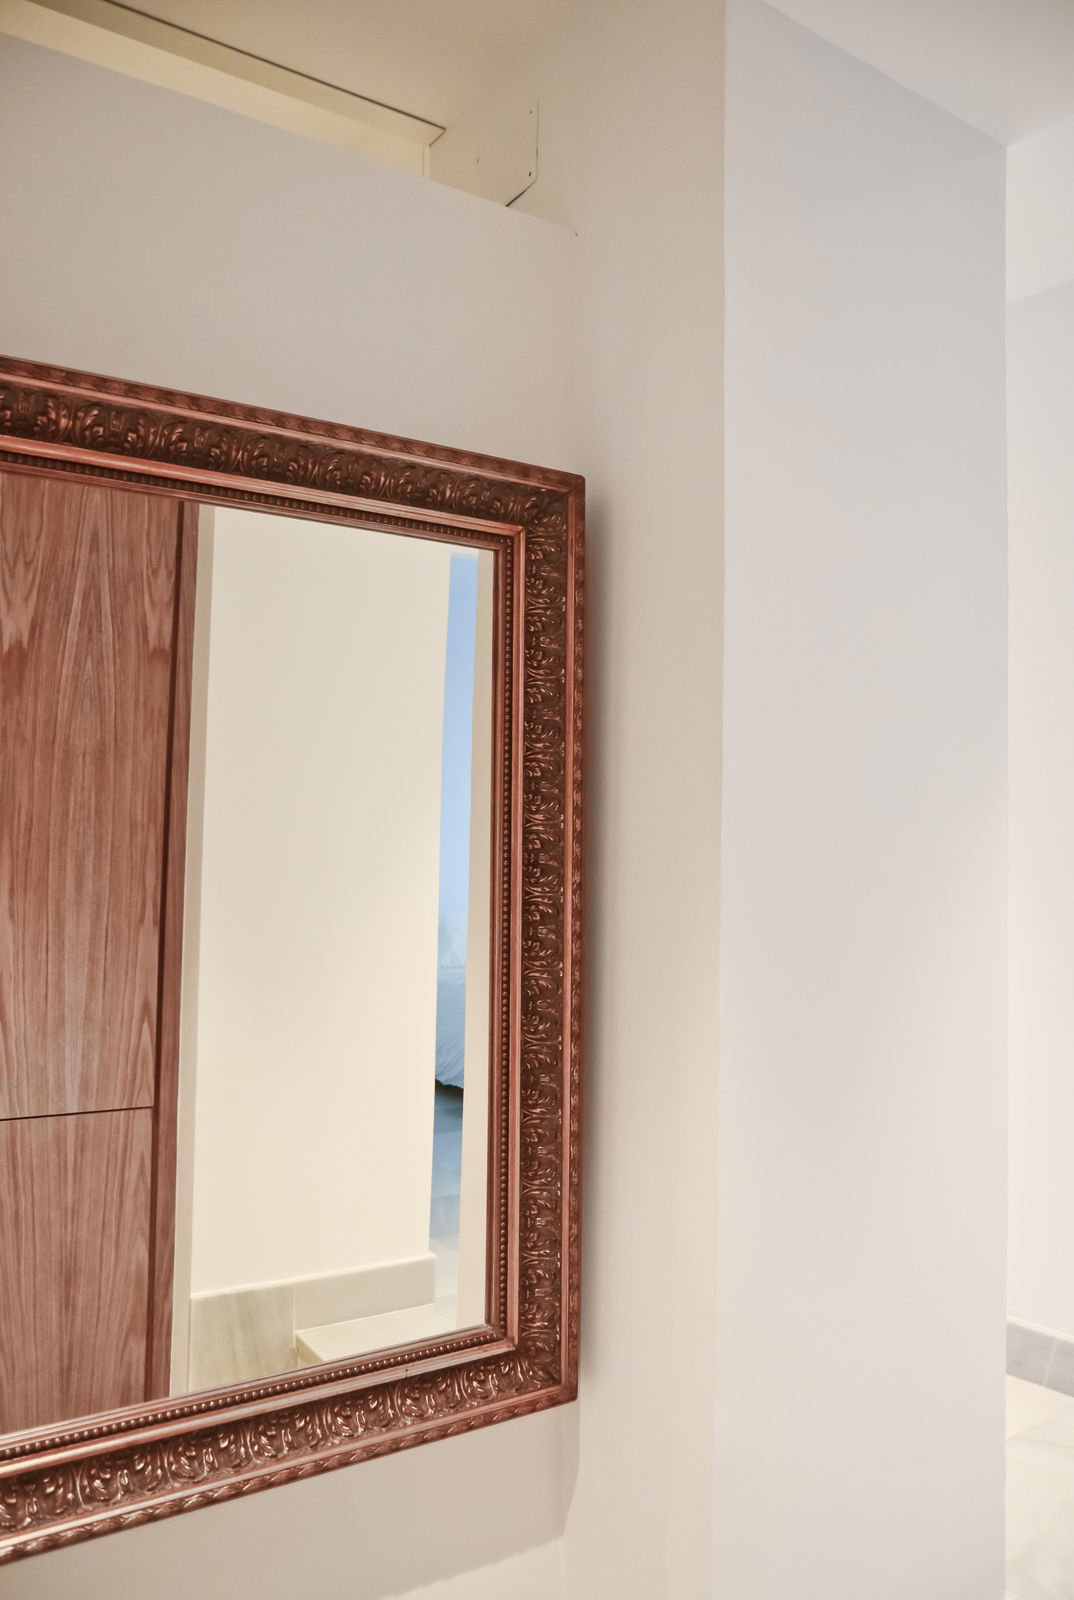 Un espejo antiguo, enfrente, refleja este diálogo, amplía el espacio, y permite a los inquilinos comprobar su apariencia antes de salir a descubrir la vieja-nueva ciudad